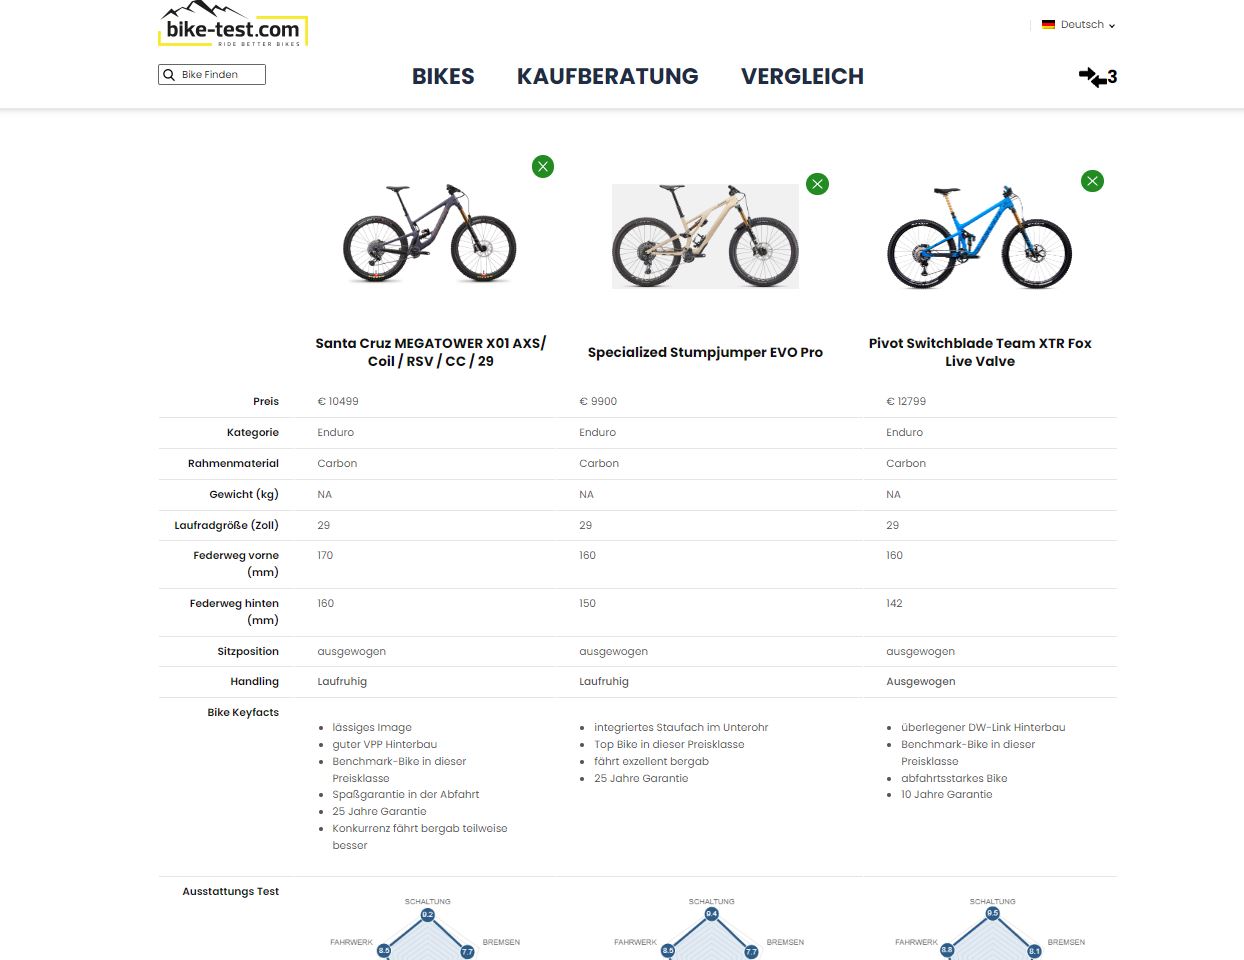 maximum three bikes in comparison